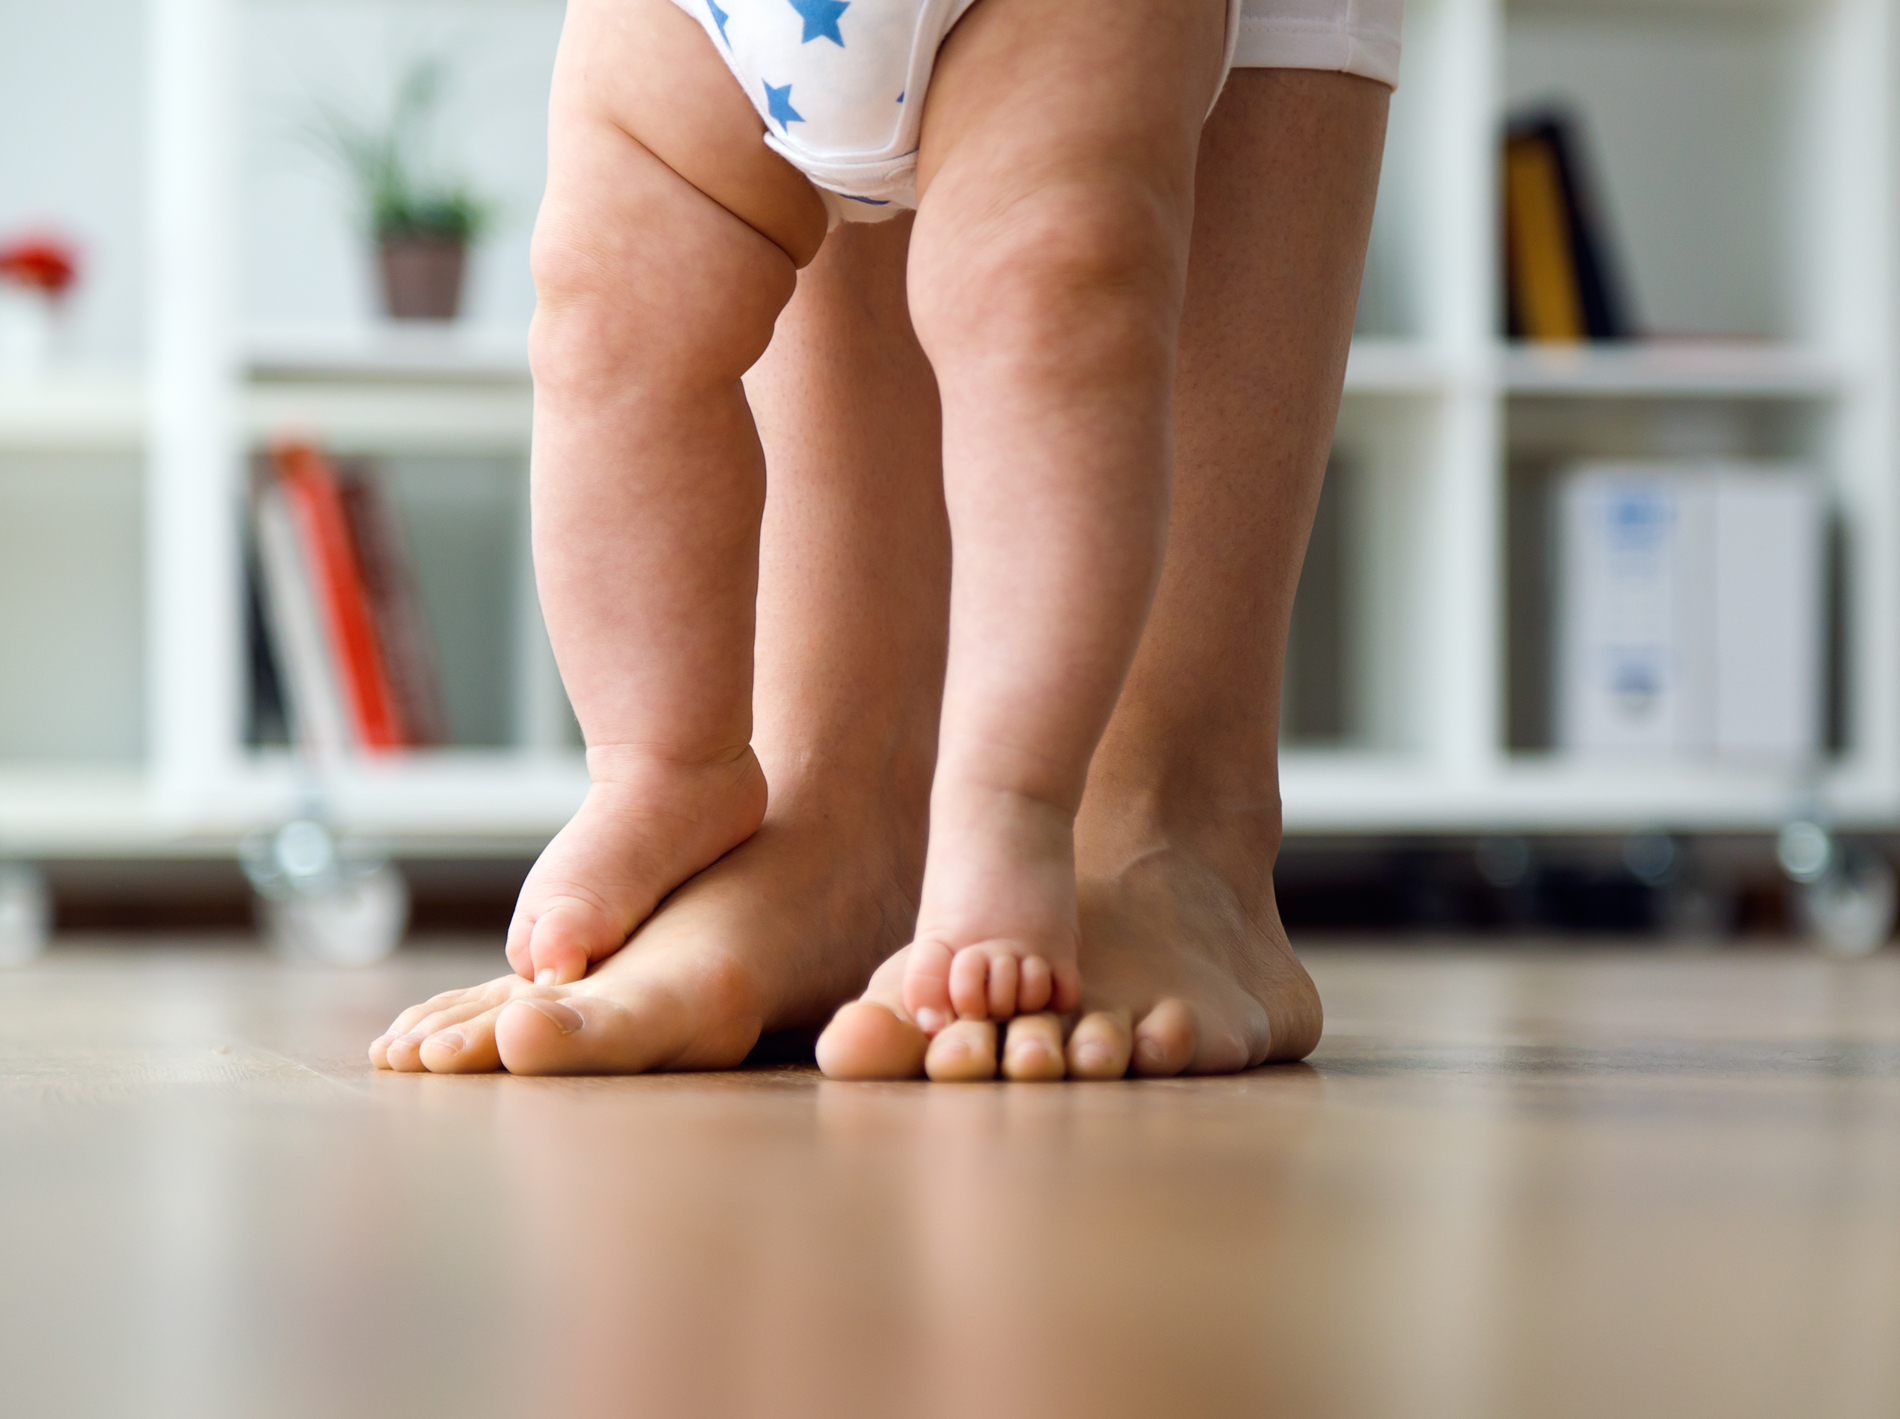 A baby walks on an adult's feet